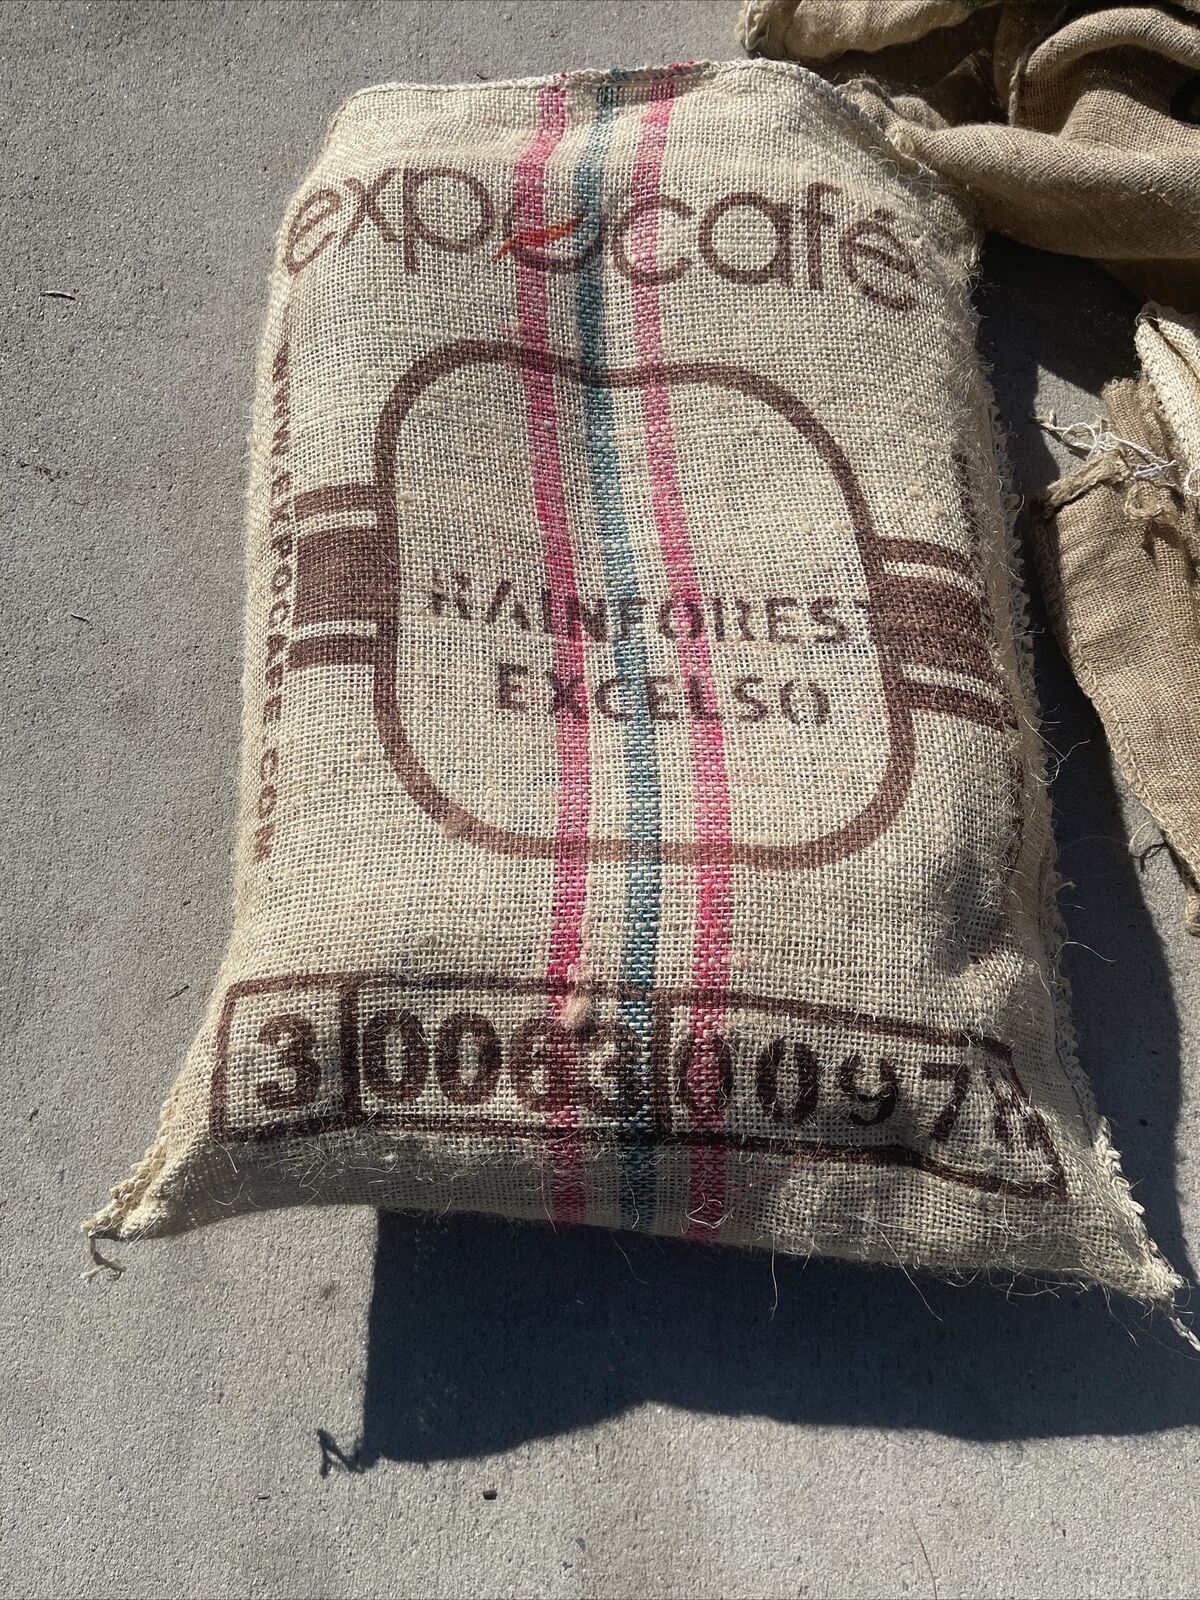 Assorted Burlap Jute Coffee Bean Bags Sacks-Buy 1 or More *See Pics/Description